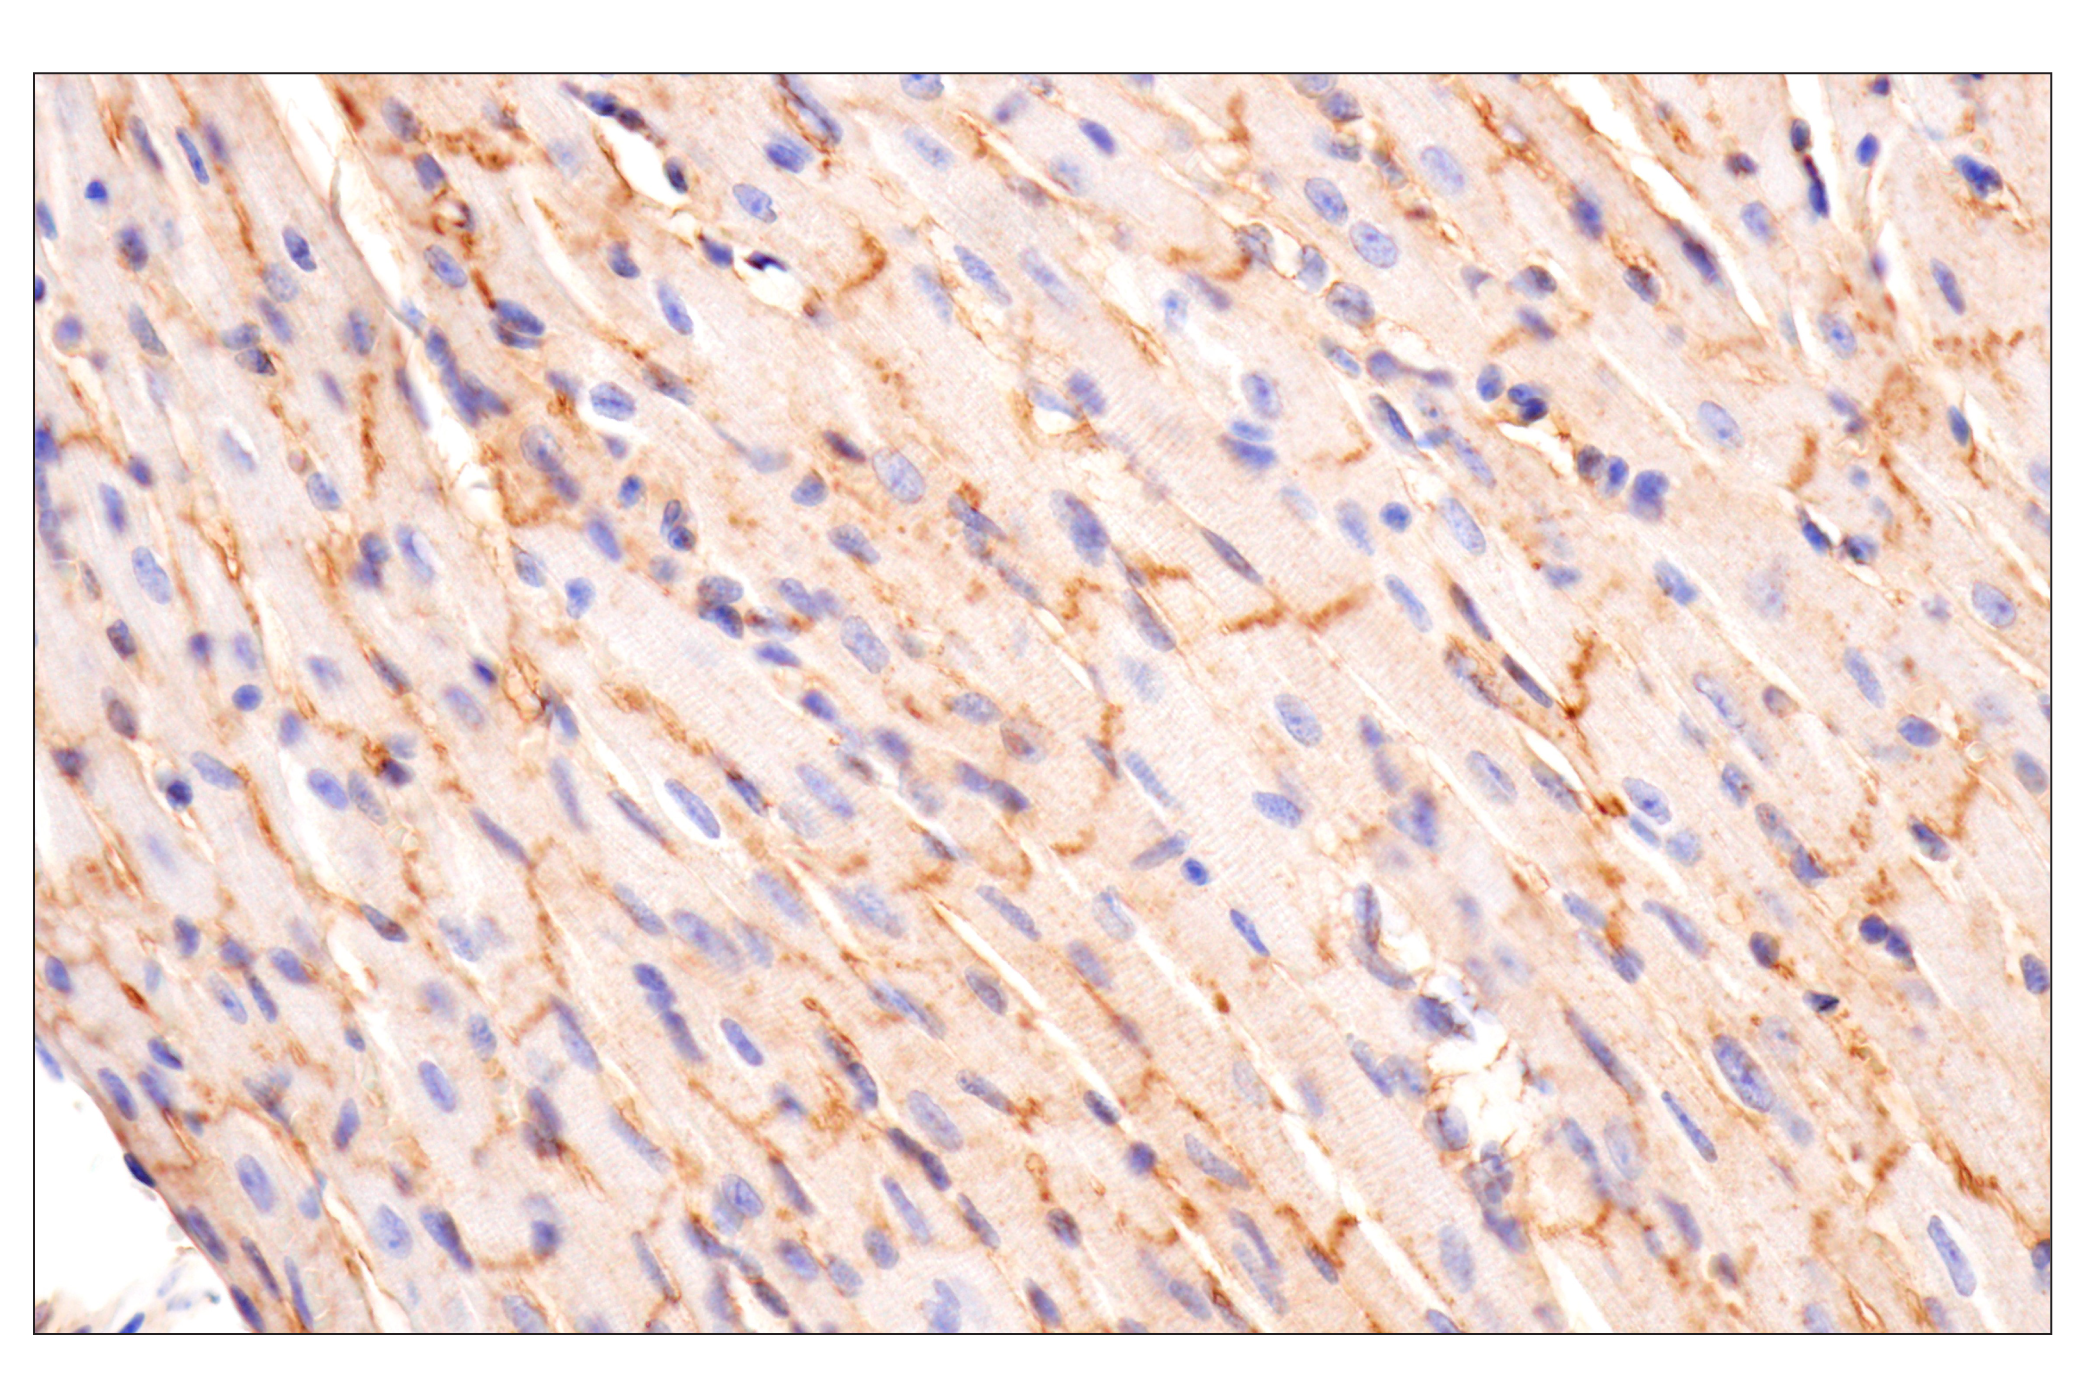  Image 35: Mouse Reactive Exosome Marker Antibody Sampler Kit